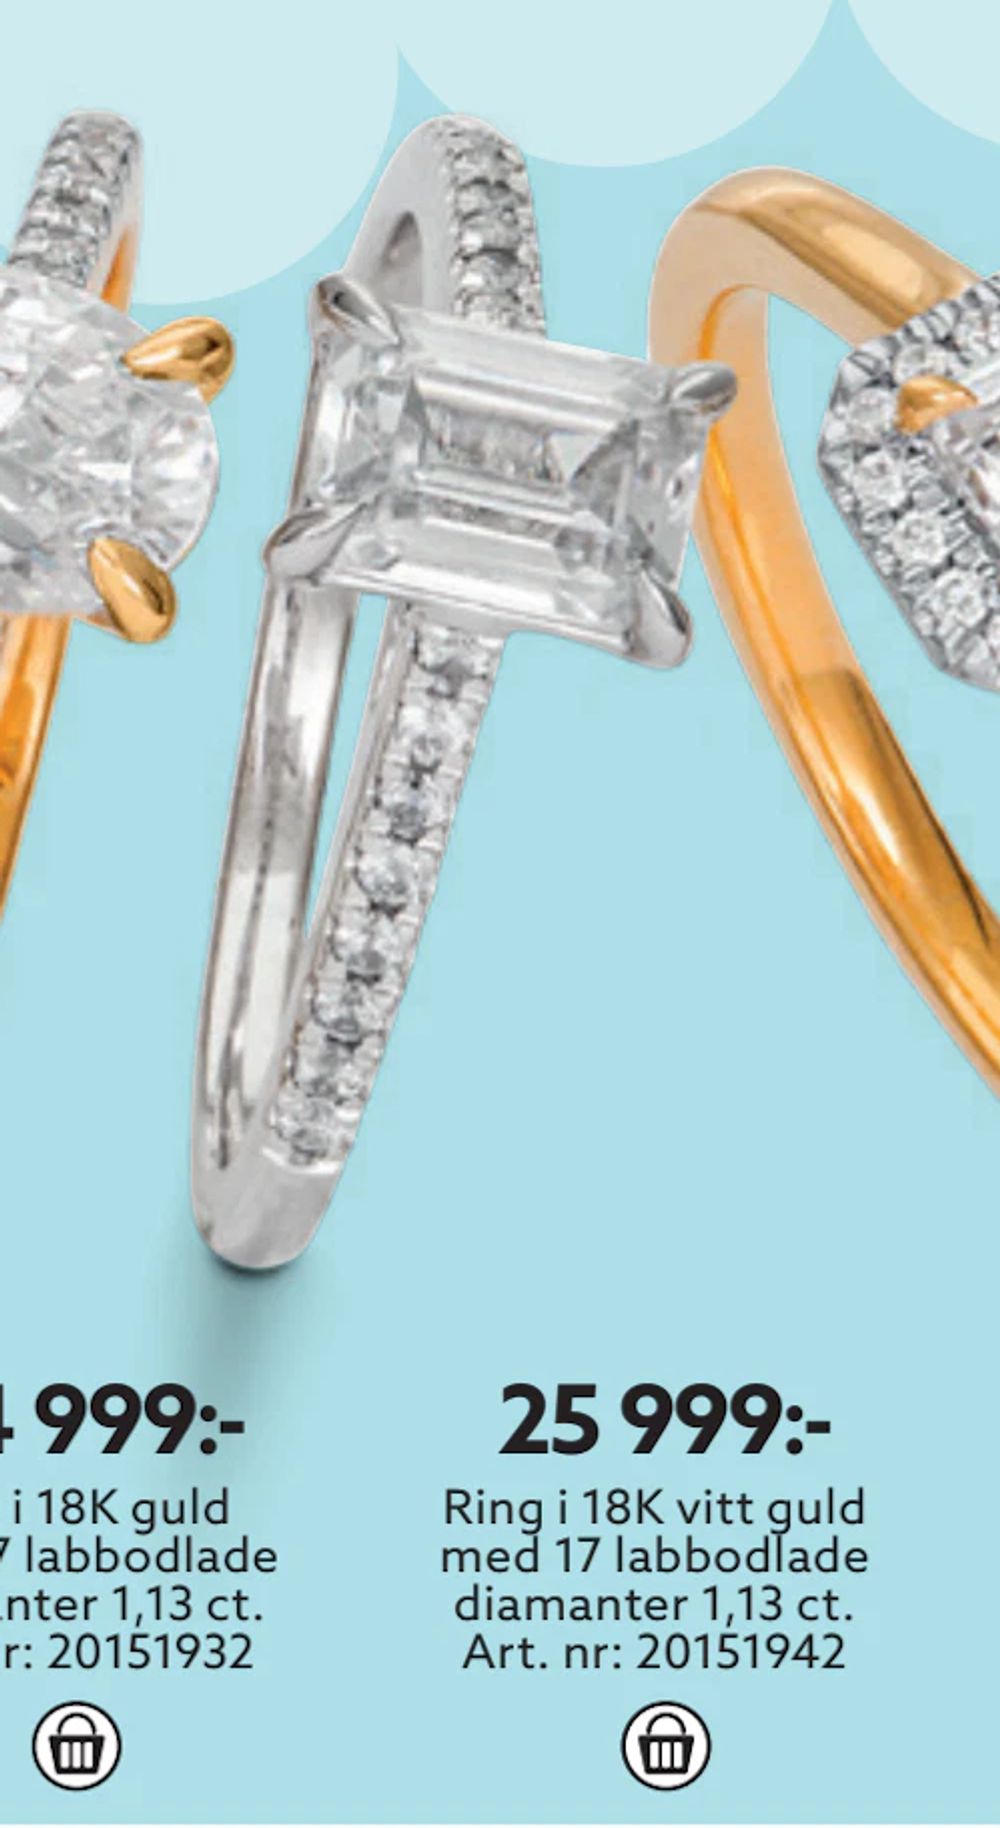 Erbjudanden på Ring i 18K vitt guld med 17 labbodlade diamanter 1,13 ct från Albrekts guld för 25 999 kr